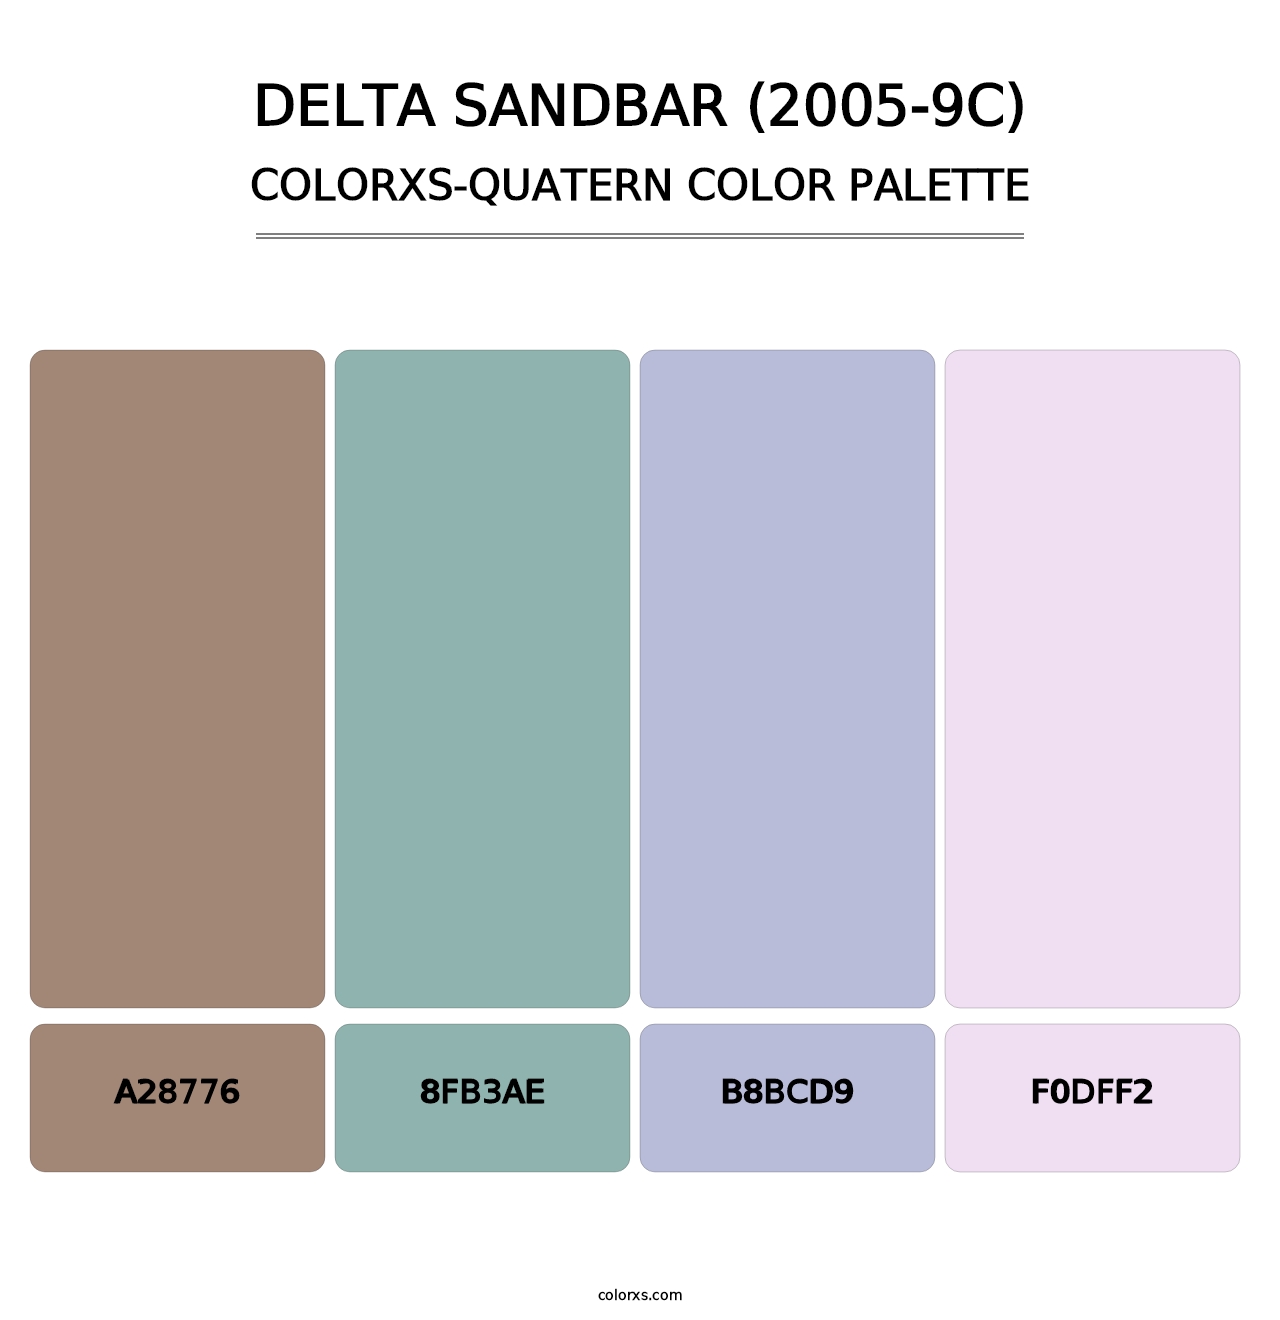 Delta Sandbar (2005-9C) - Colorxs Quatern Palette